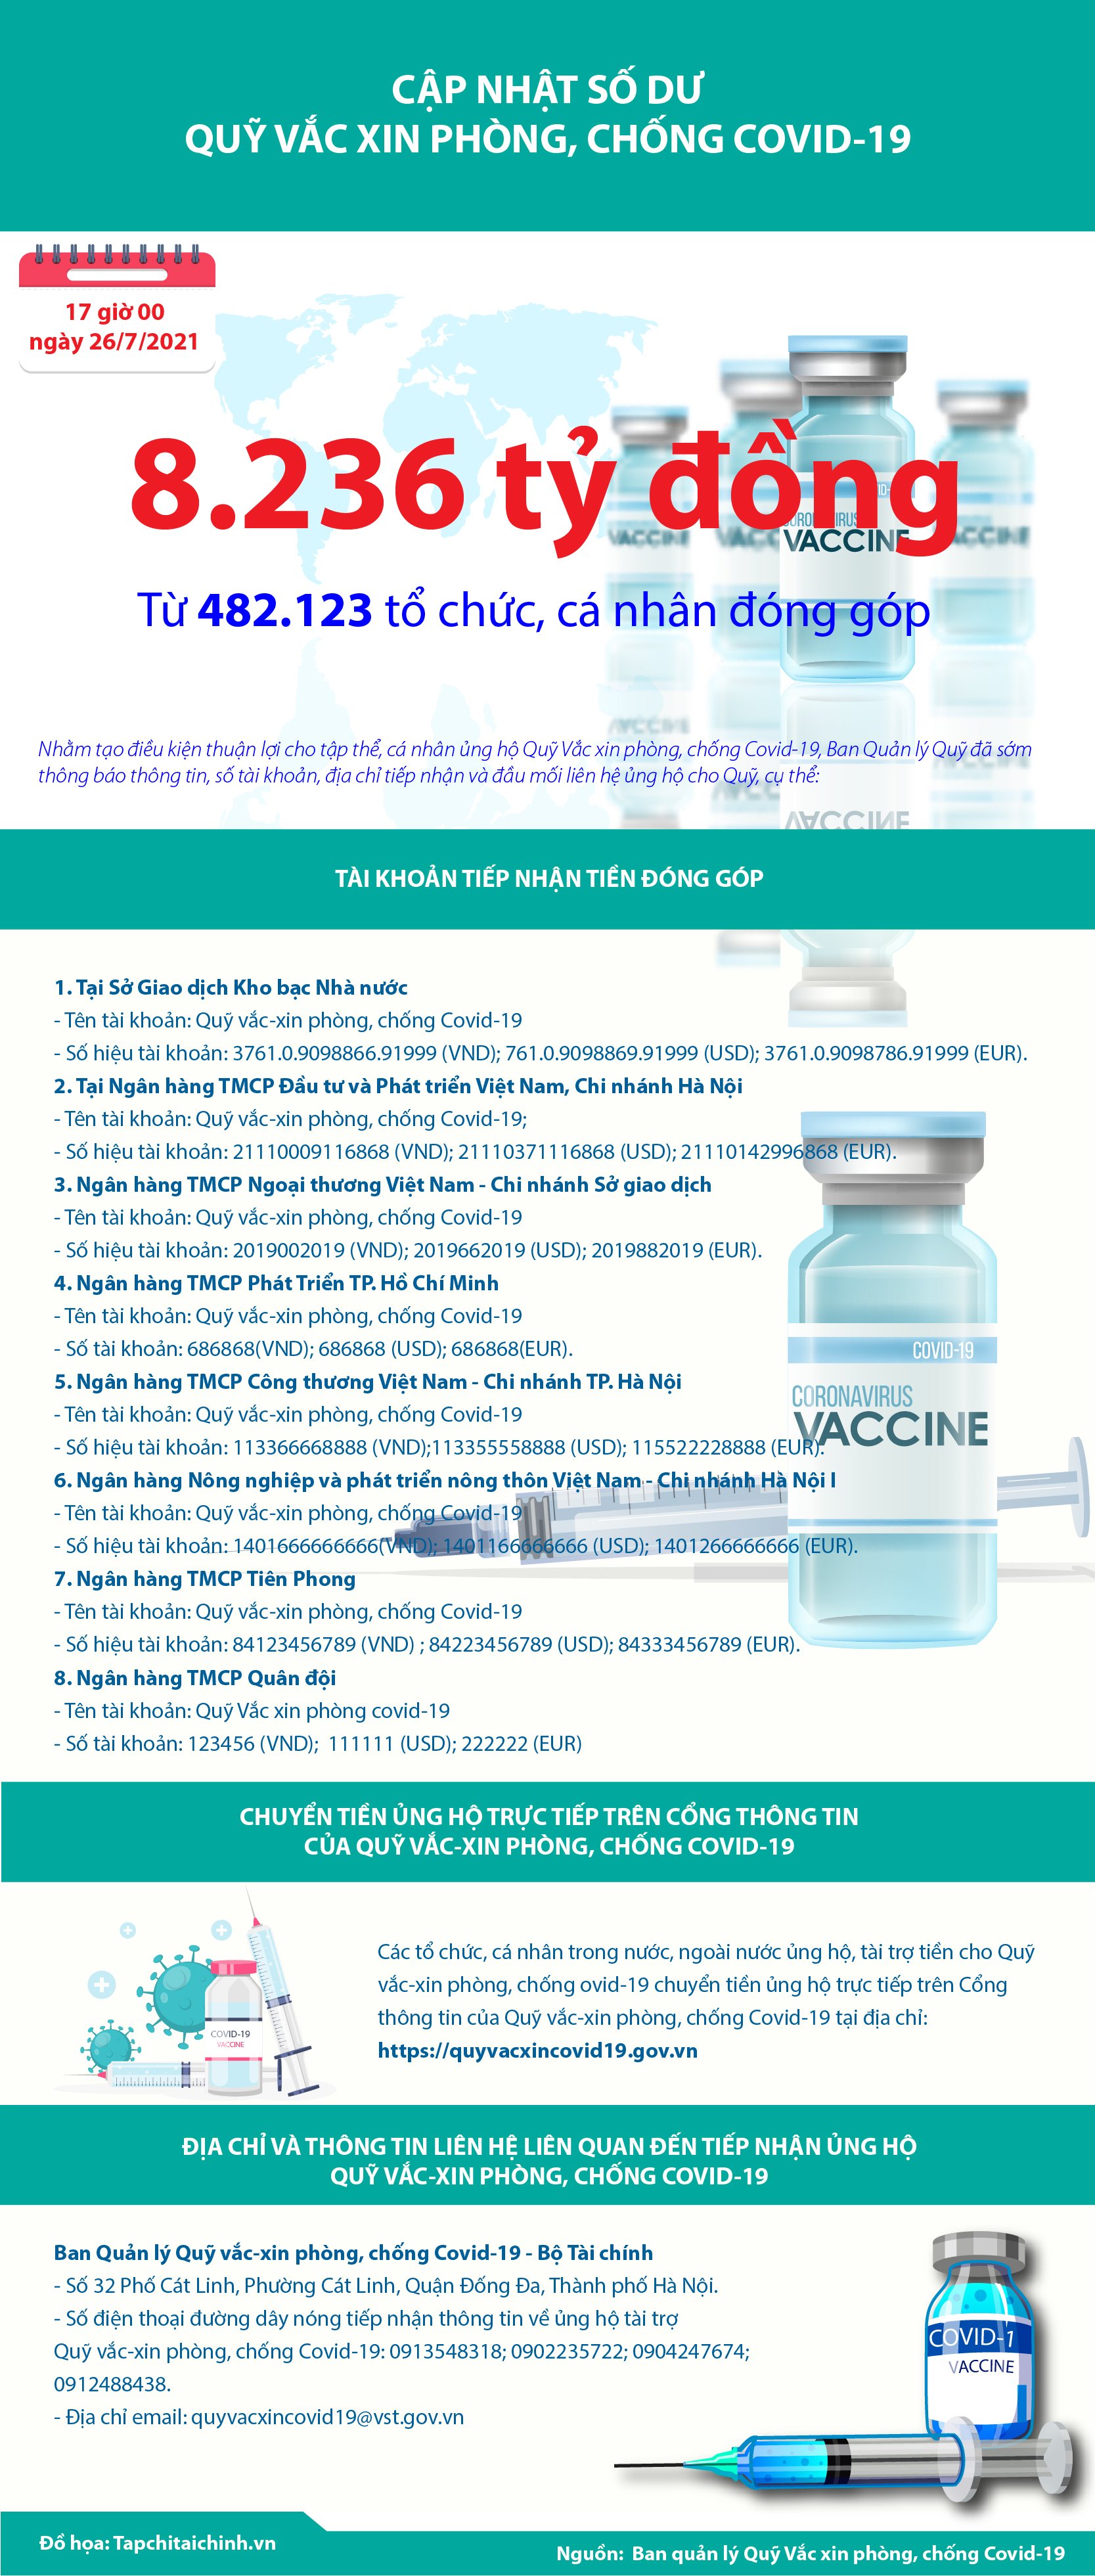 [Infographics] Quỹ Vắc xin phòng, chống Covid-19 đã tiếp nhận ủng hộ 8.236 tỷ đồng - Ảnh 1